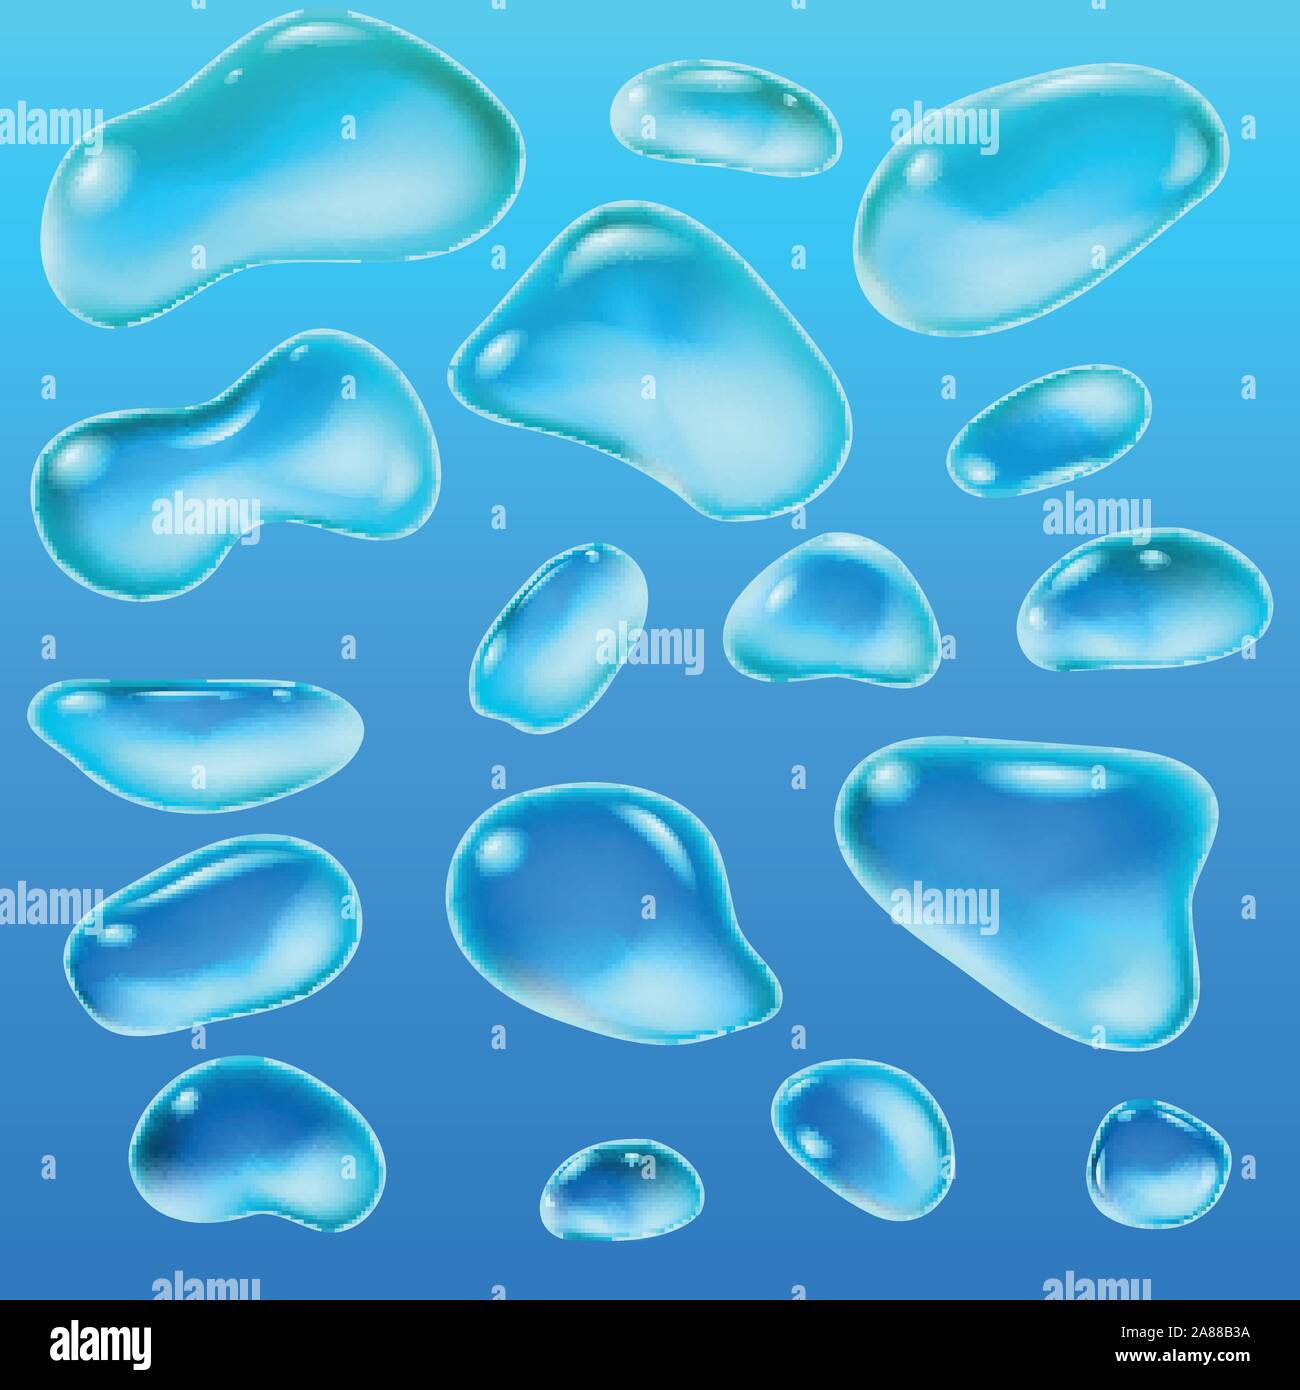 Realistische Tropfen Regen auf einem blauen Hintergrund in Form von Glas. Abstrakte eingestellt. Vector Illustration. Stock Vektor